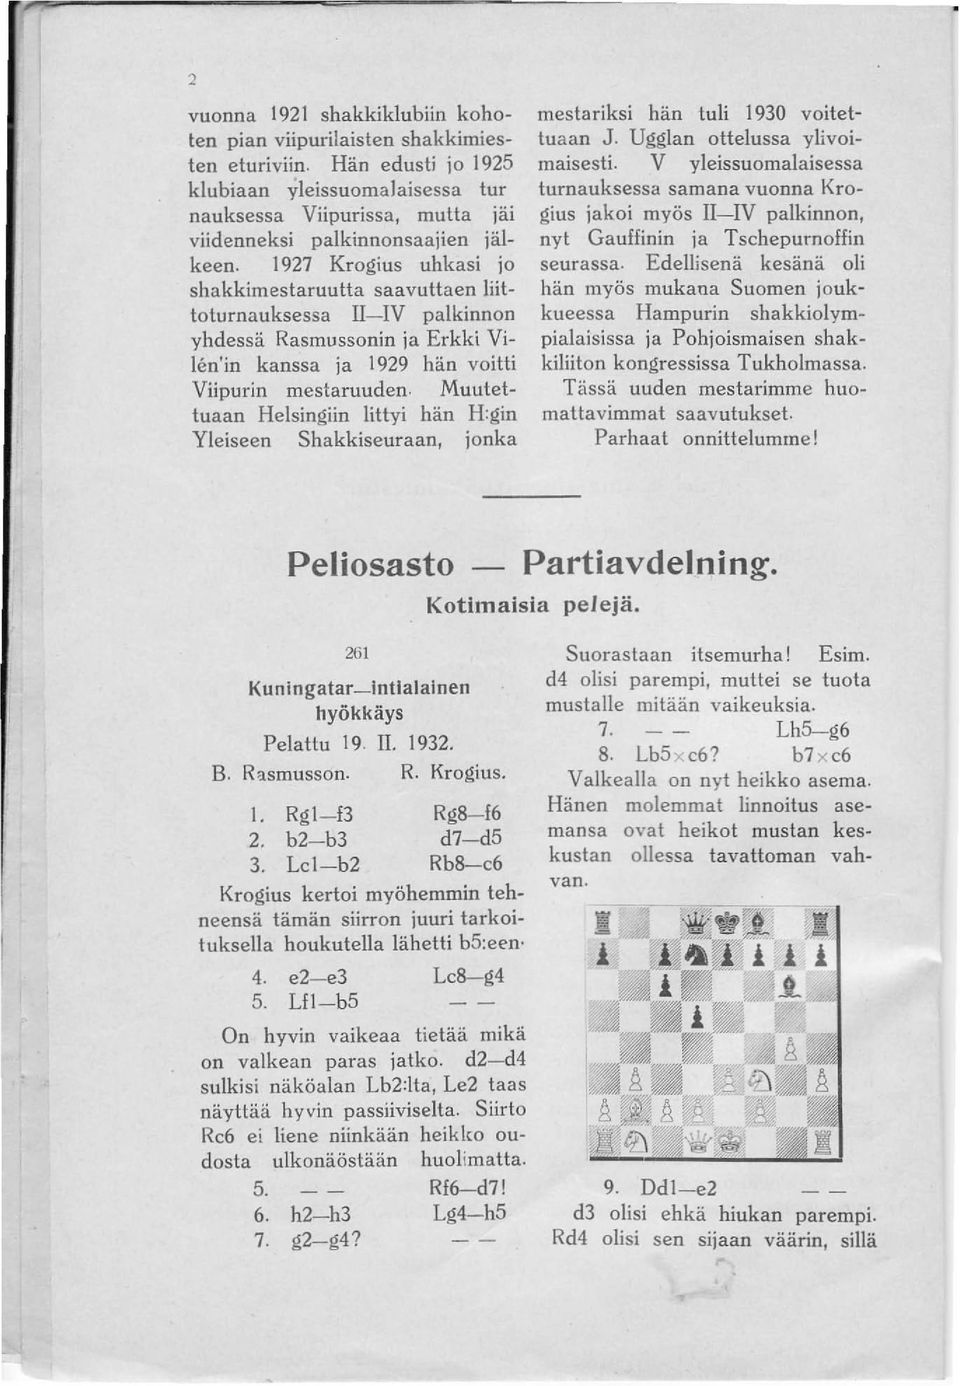 1927 Krogius uhkasi jo shakkimestaruutta saavuttaen liittoturnauksessa II-IV palkinnon yhdessä Rasmussonin ja Erkki Vilen'in kanssa ja 1929 hän voitti Viipurin mestaruuden.